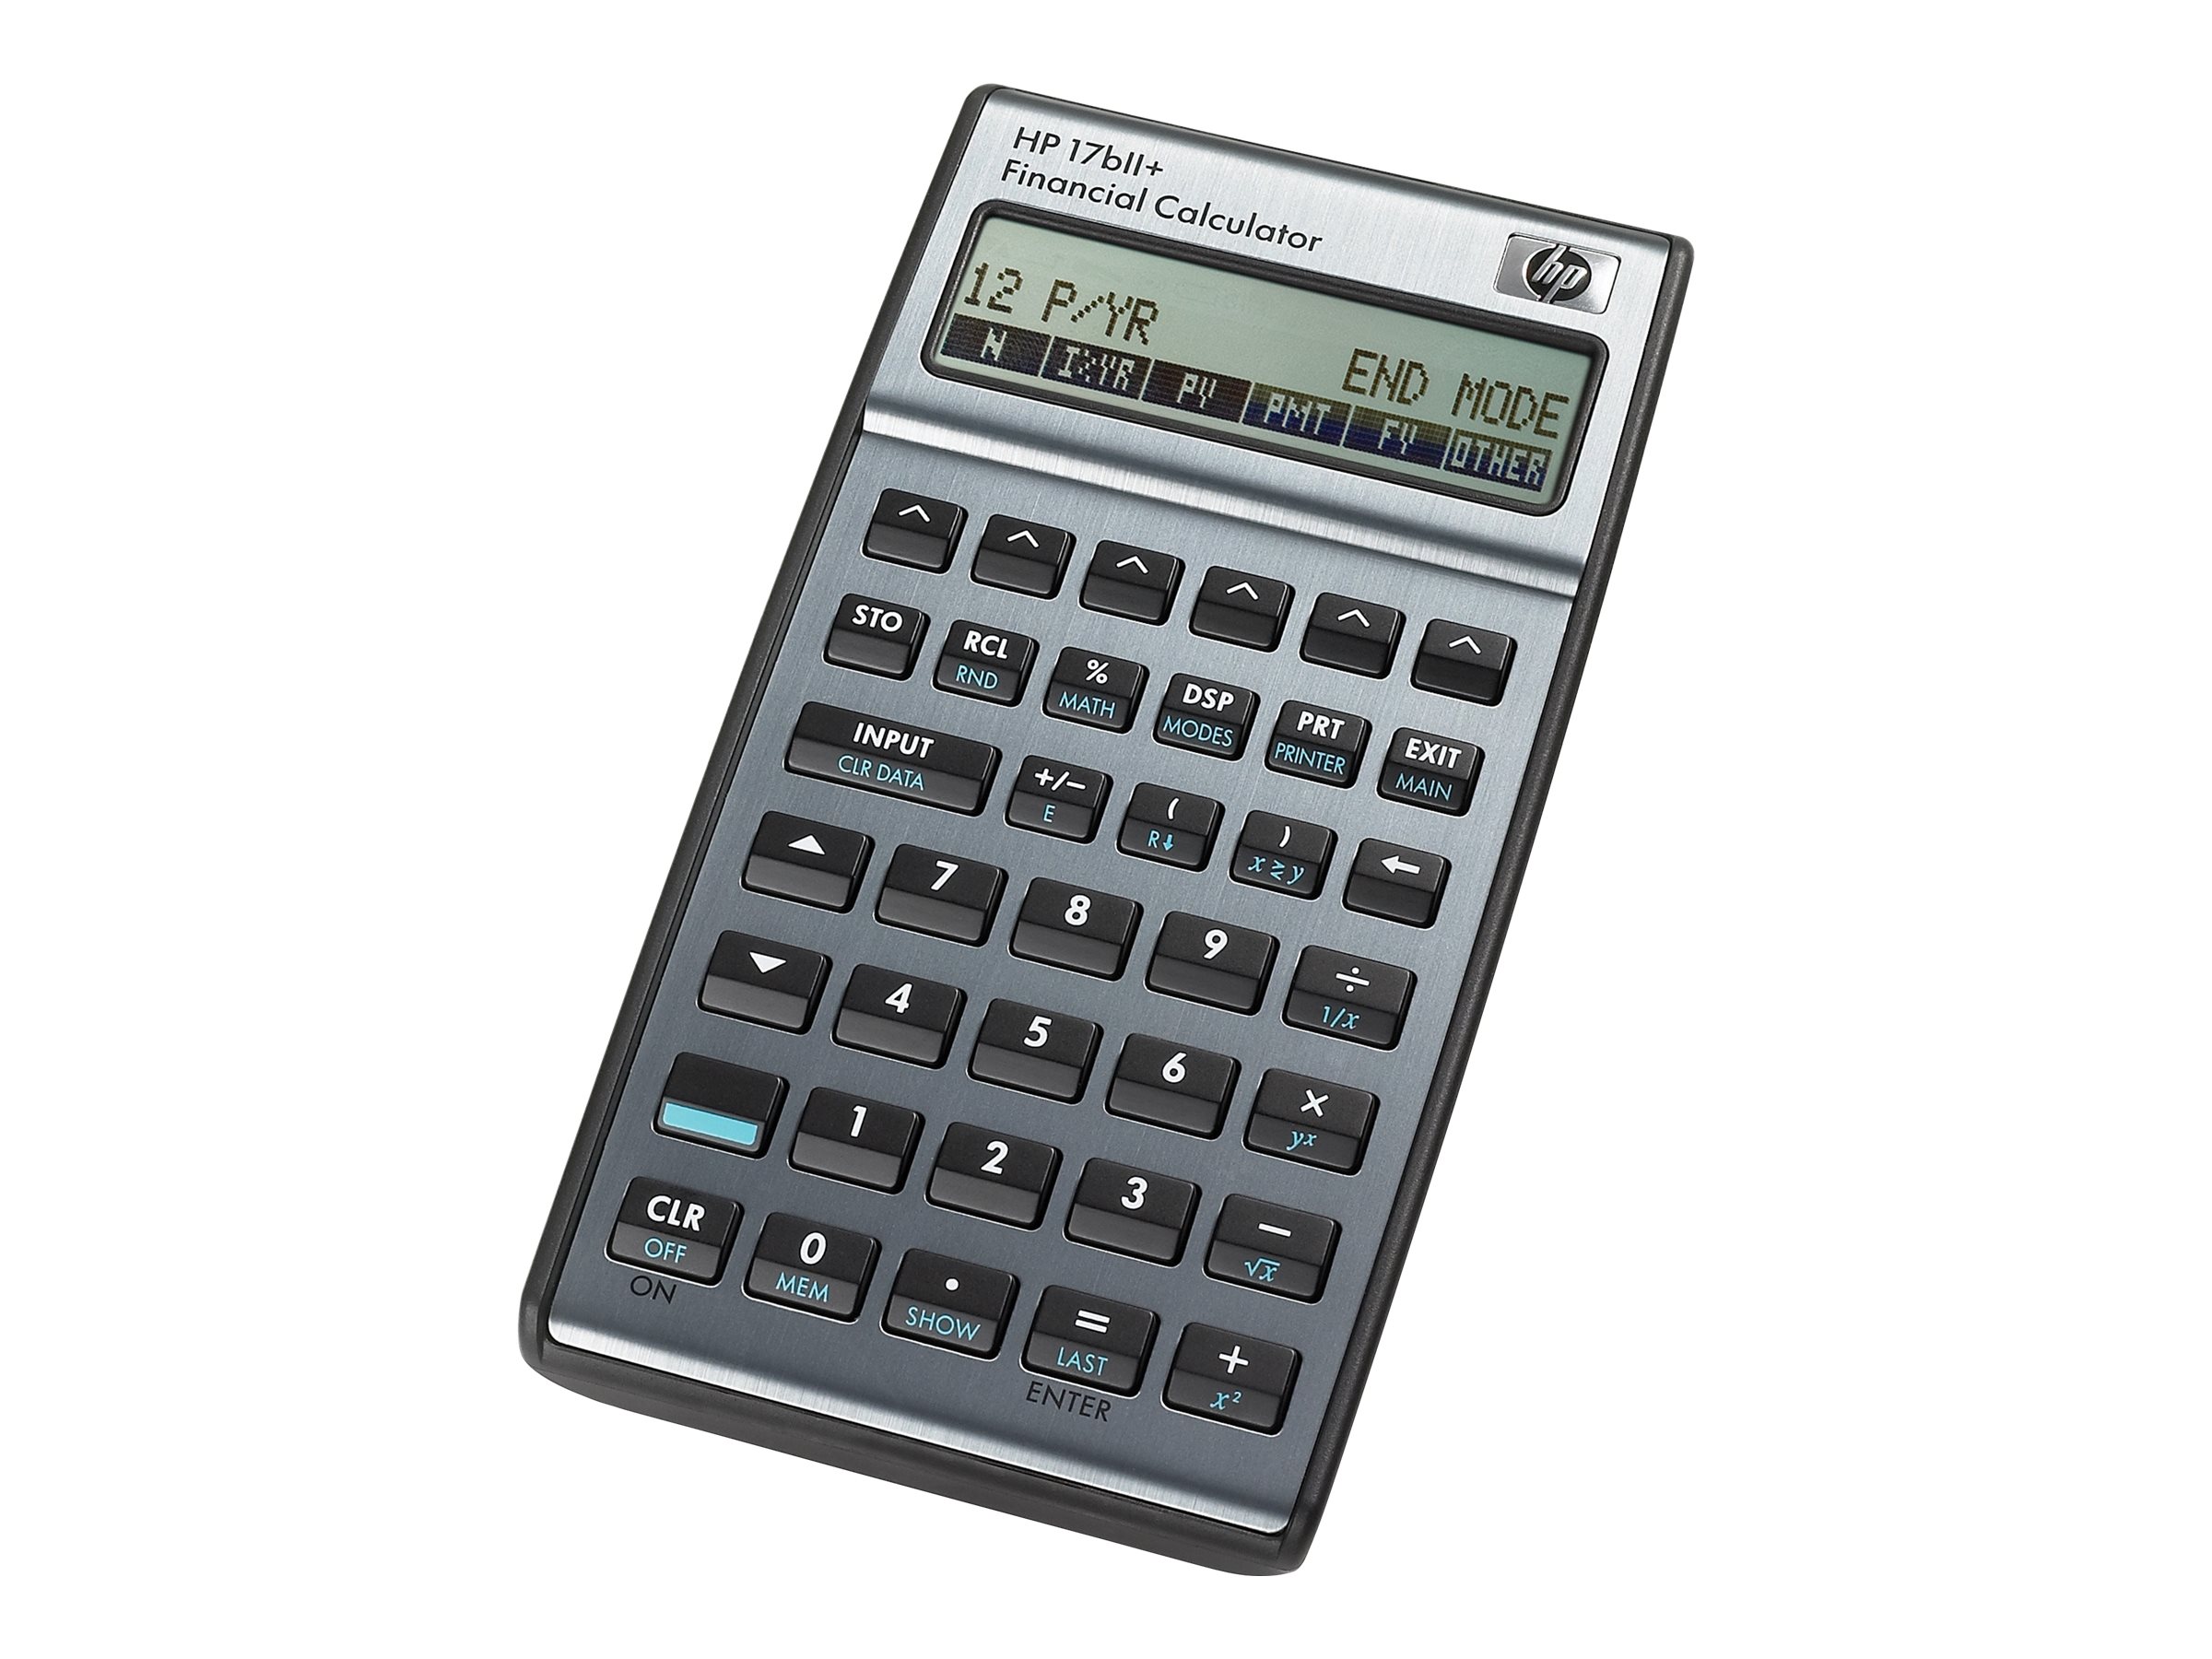 HP 17bll + Financial Calculator HP Hewlett Packard 